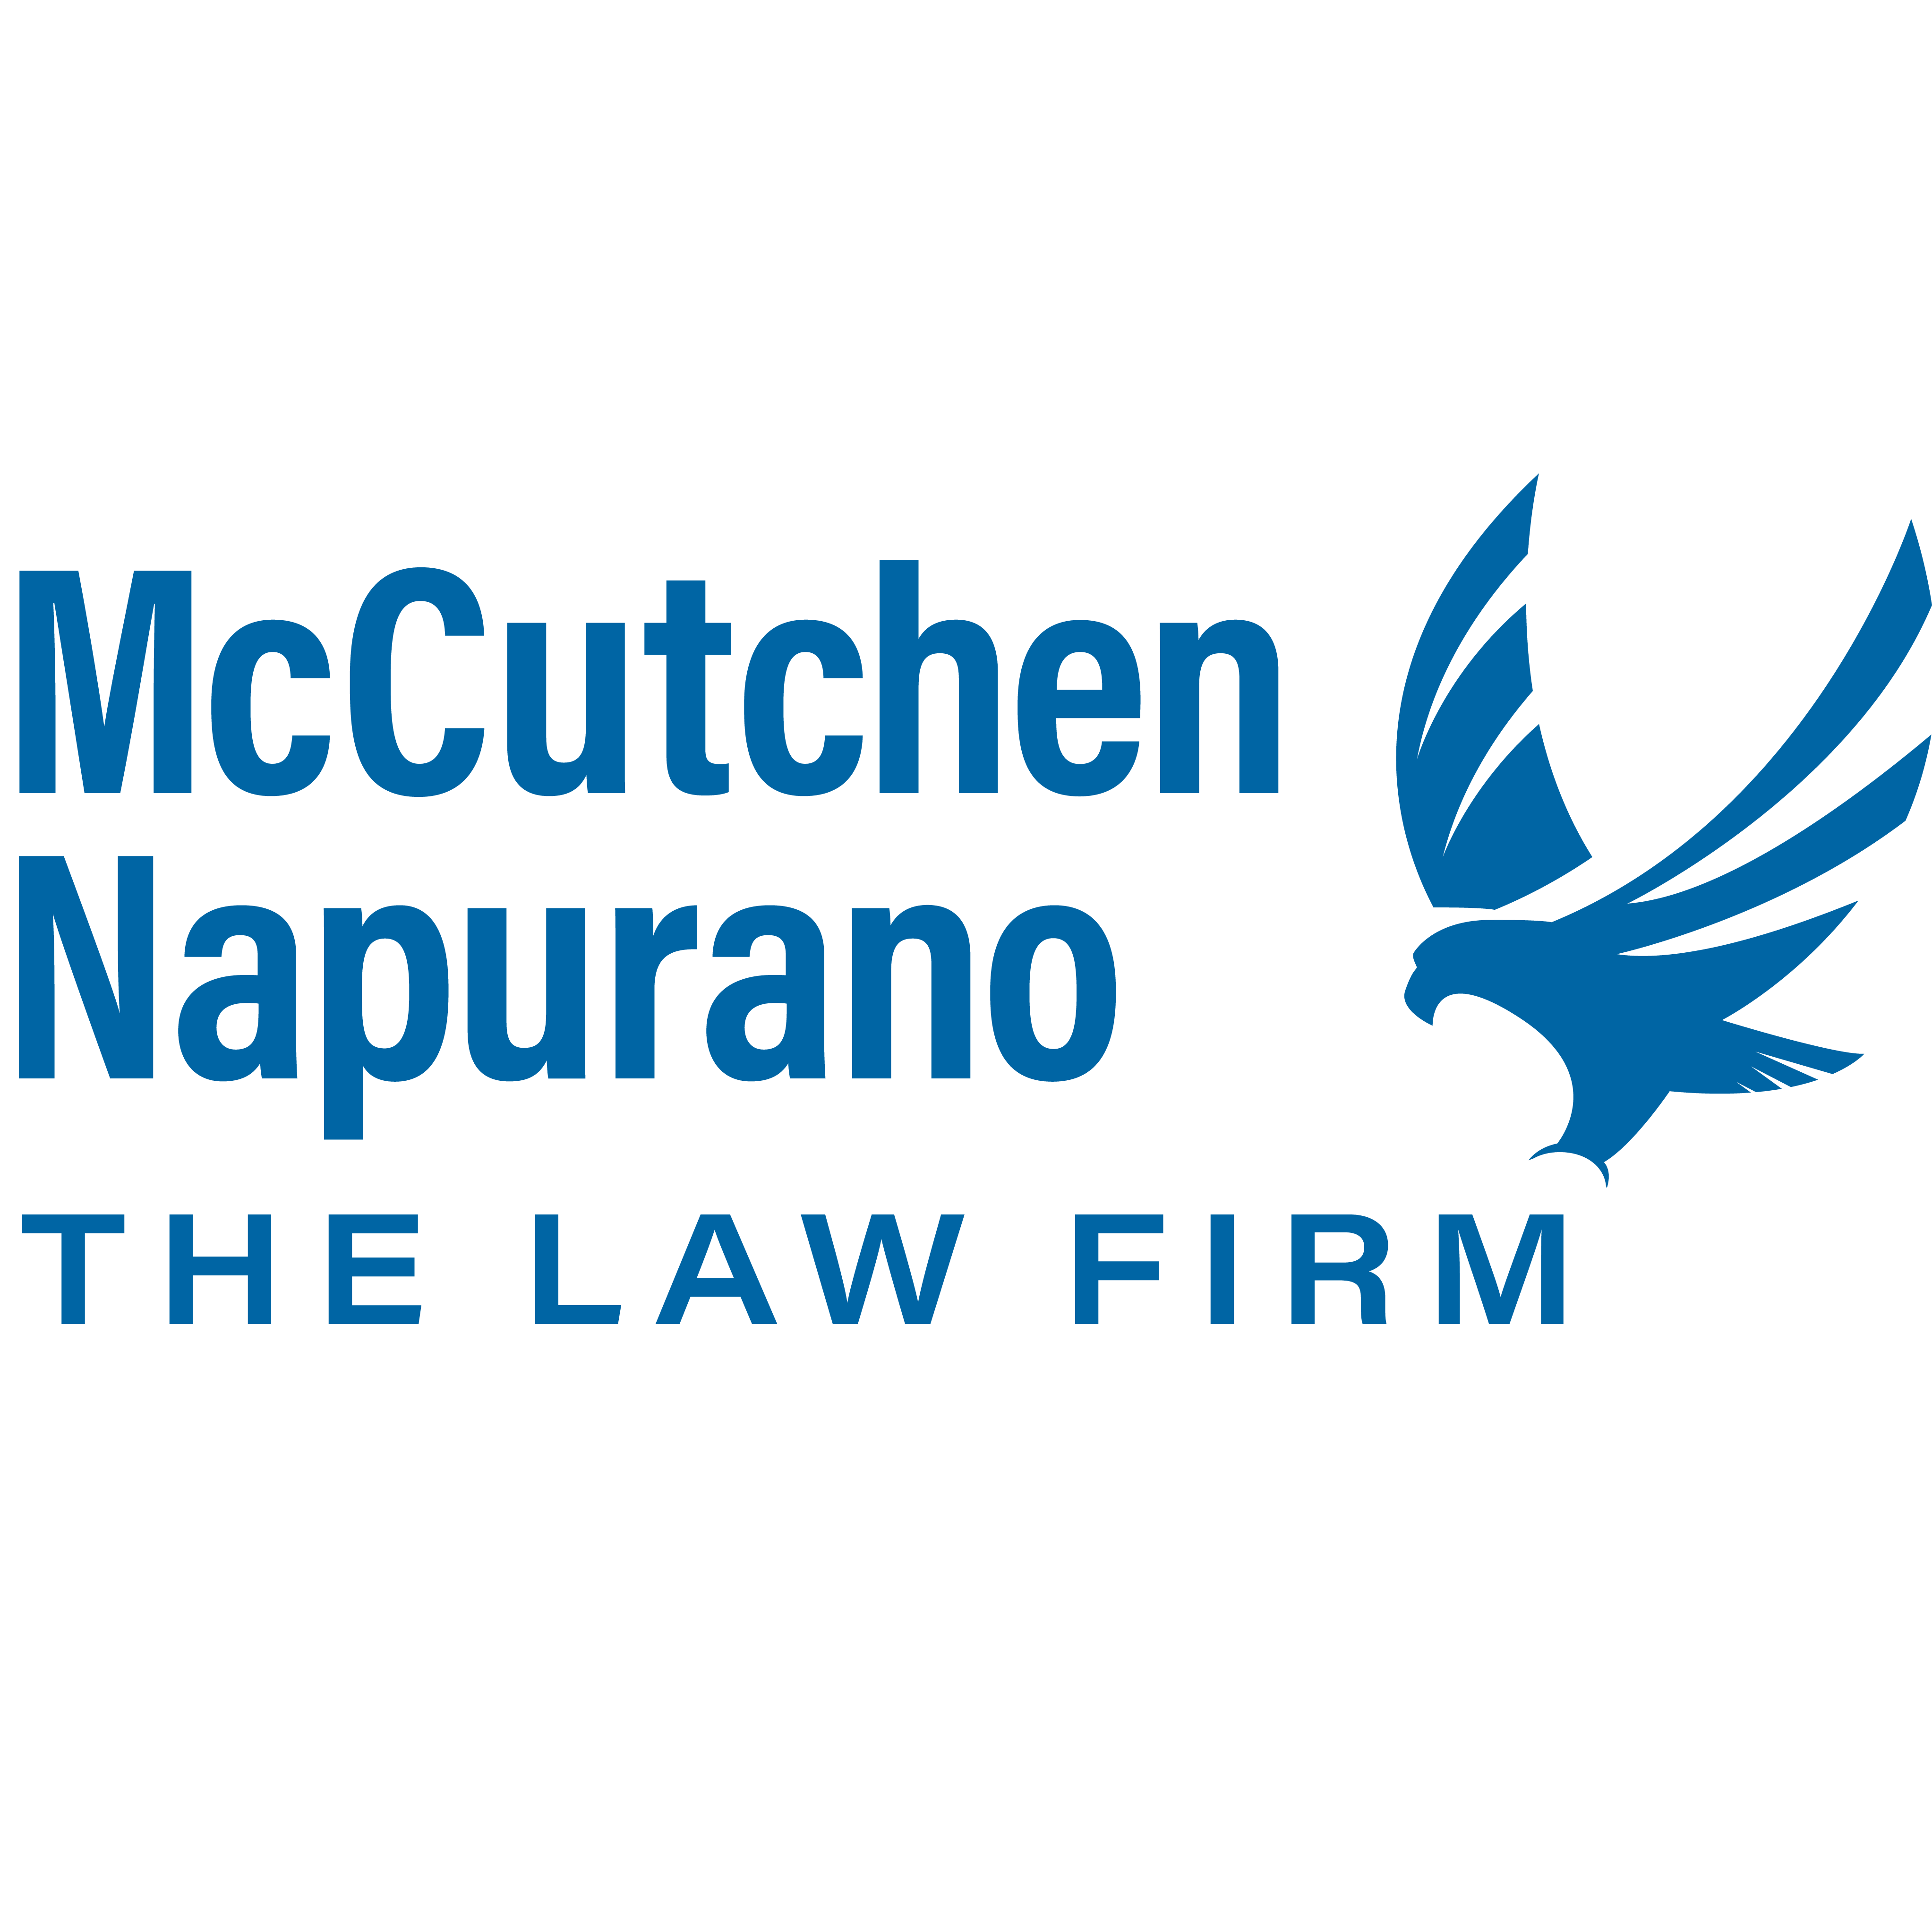 McCutchen Napurano - The Law Firm - Fort Smith, AR 72901 - (479)783-0036 | ShowMeLocal.com